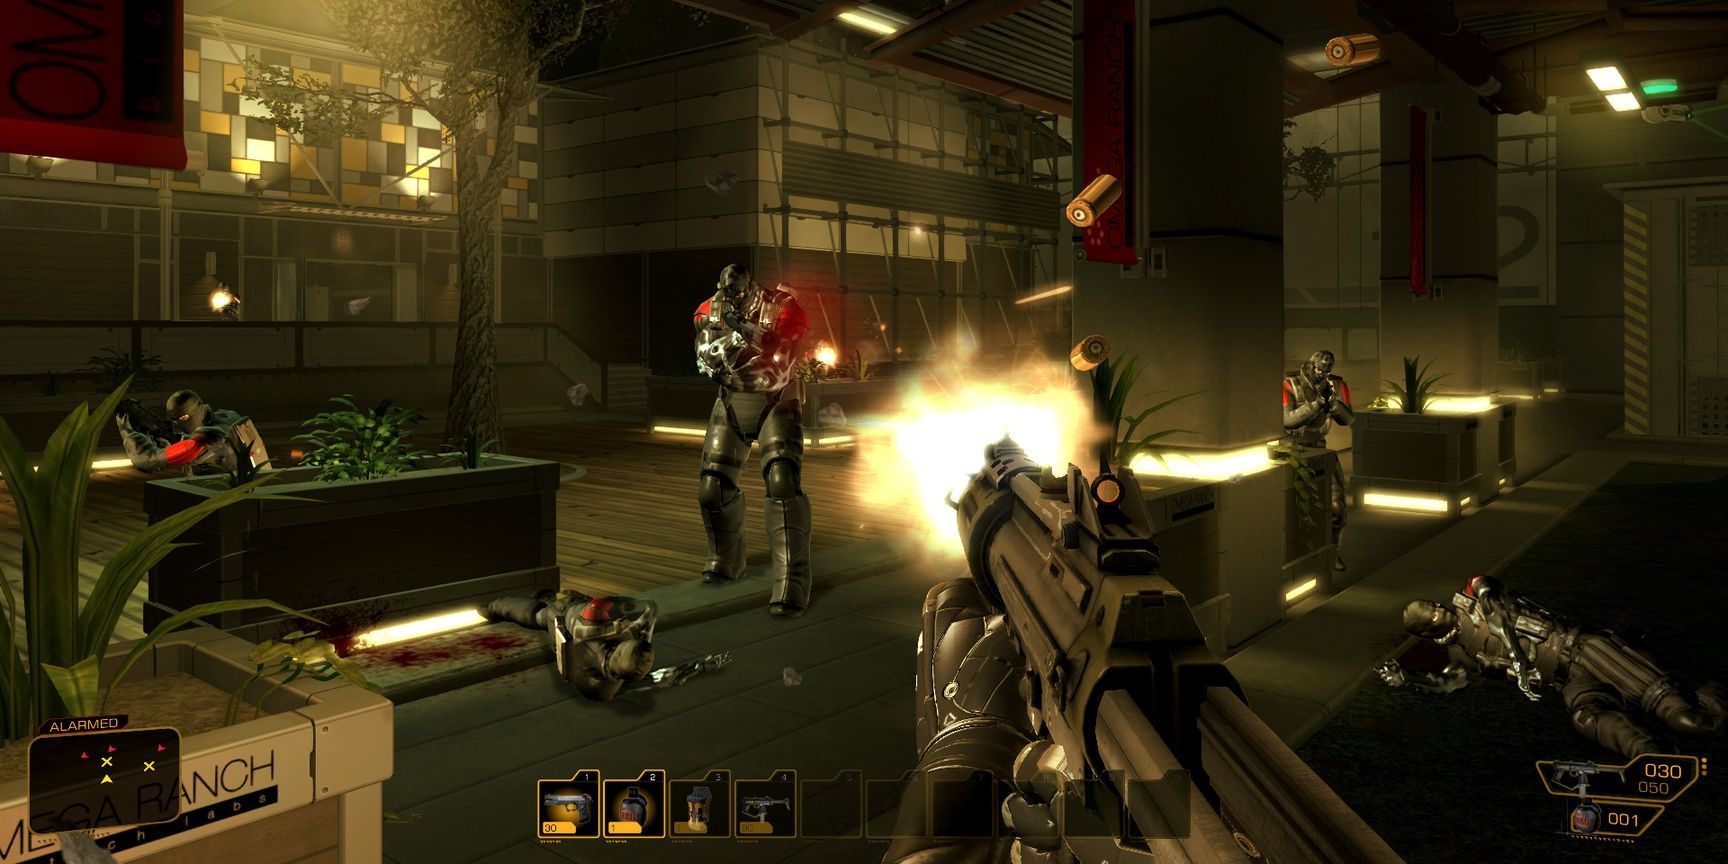 A gunfight in Deus Ex: Human Revolution